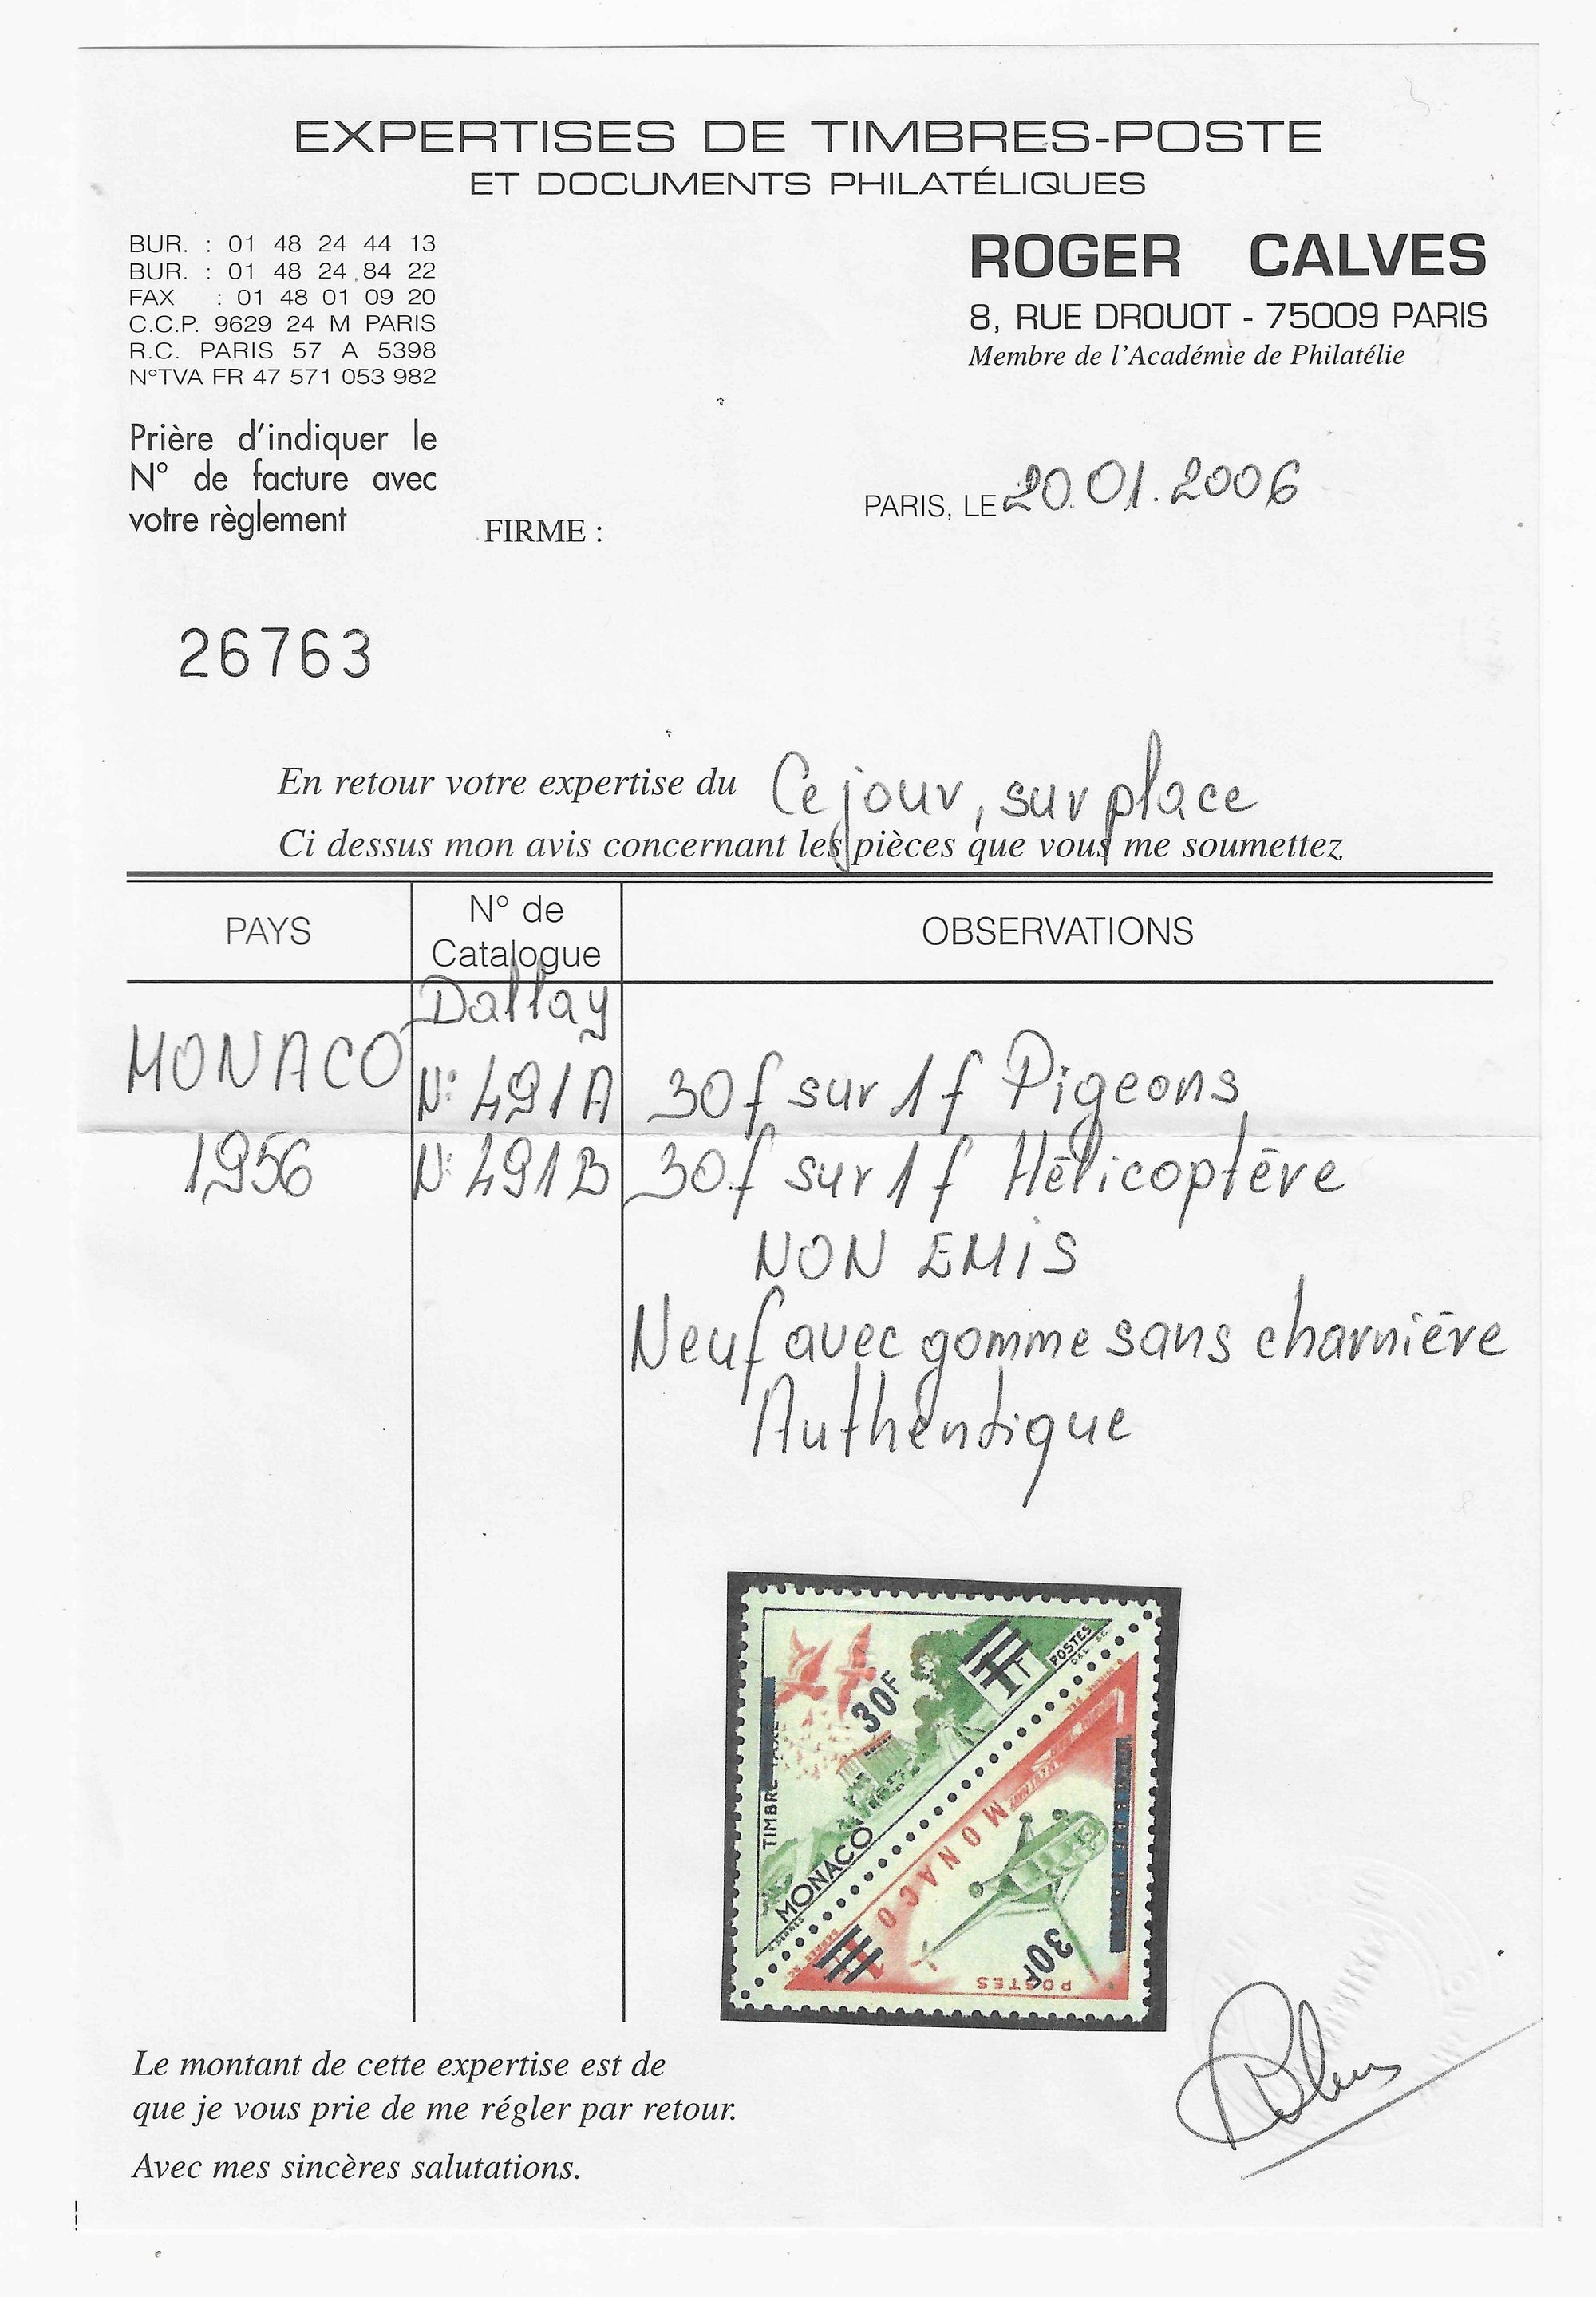 Monaco - n°491A et 491B - non émis - neufs** - SUP - avec certificat papier Calves - Calves